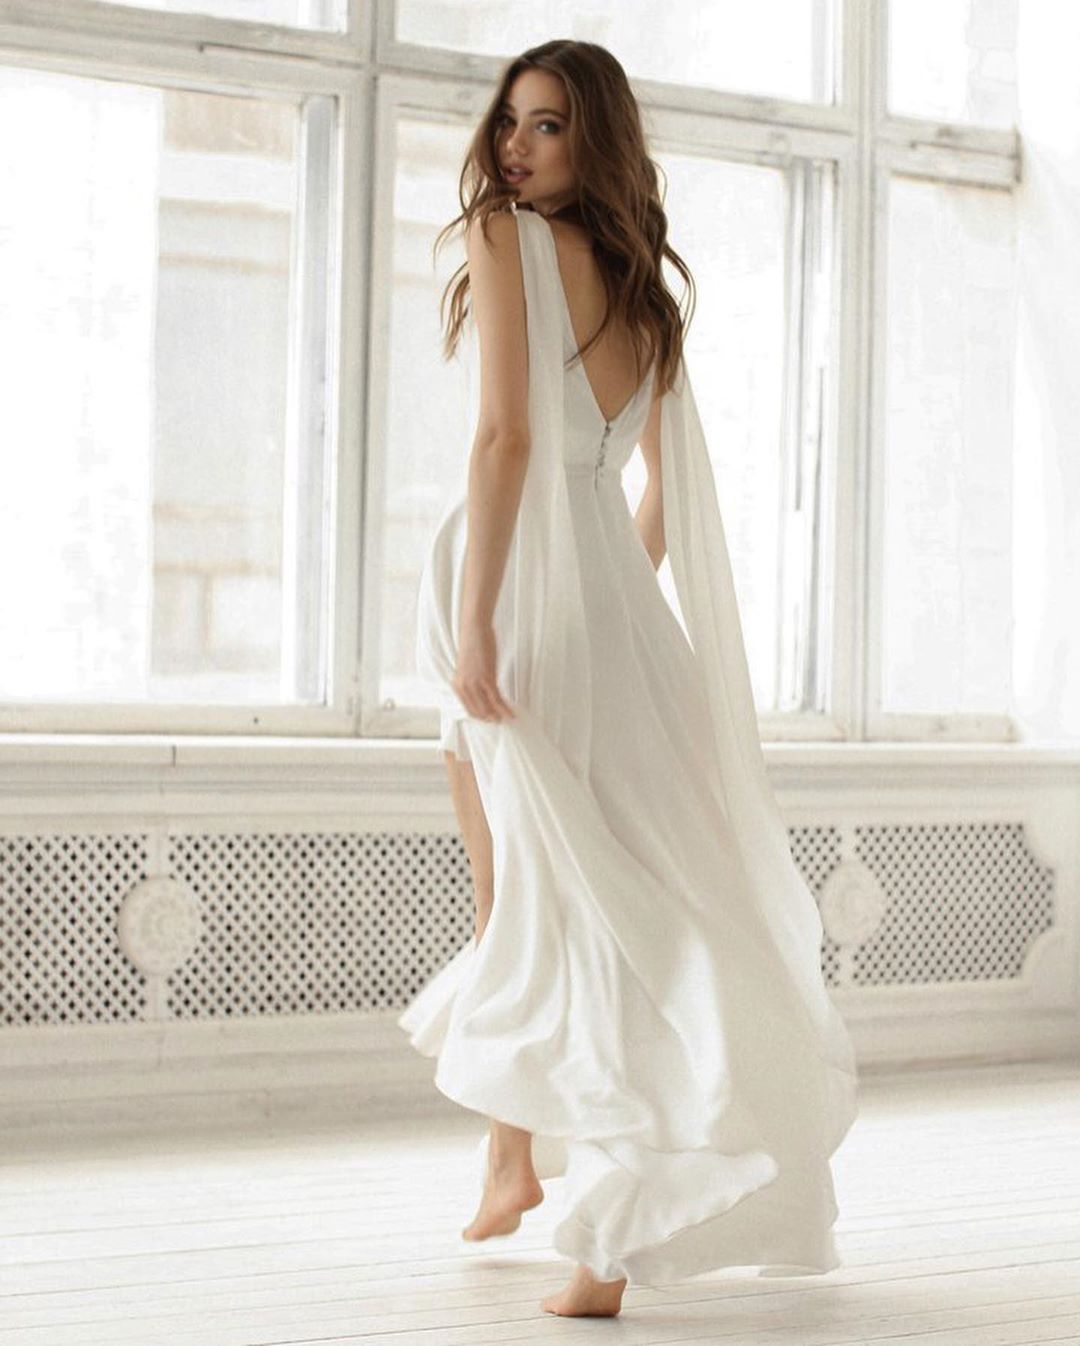 Chiffon wedding dress. Light white wedding dress online. Elopement wedding dress. Destination wedding dress online.